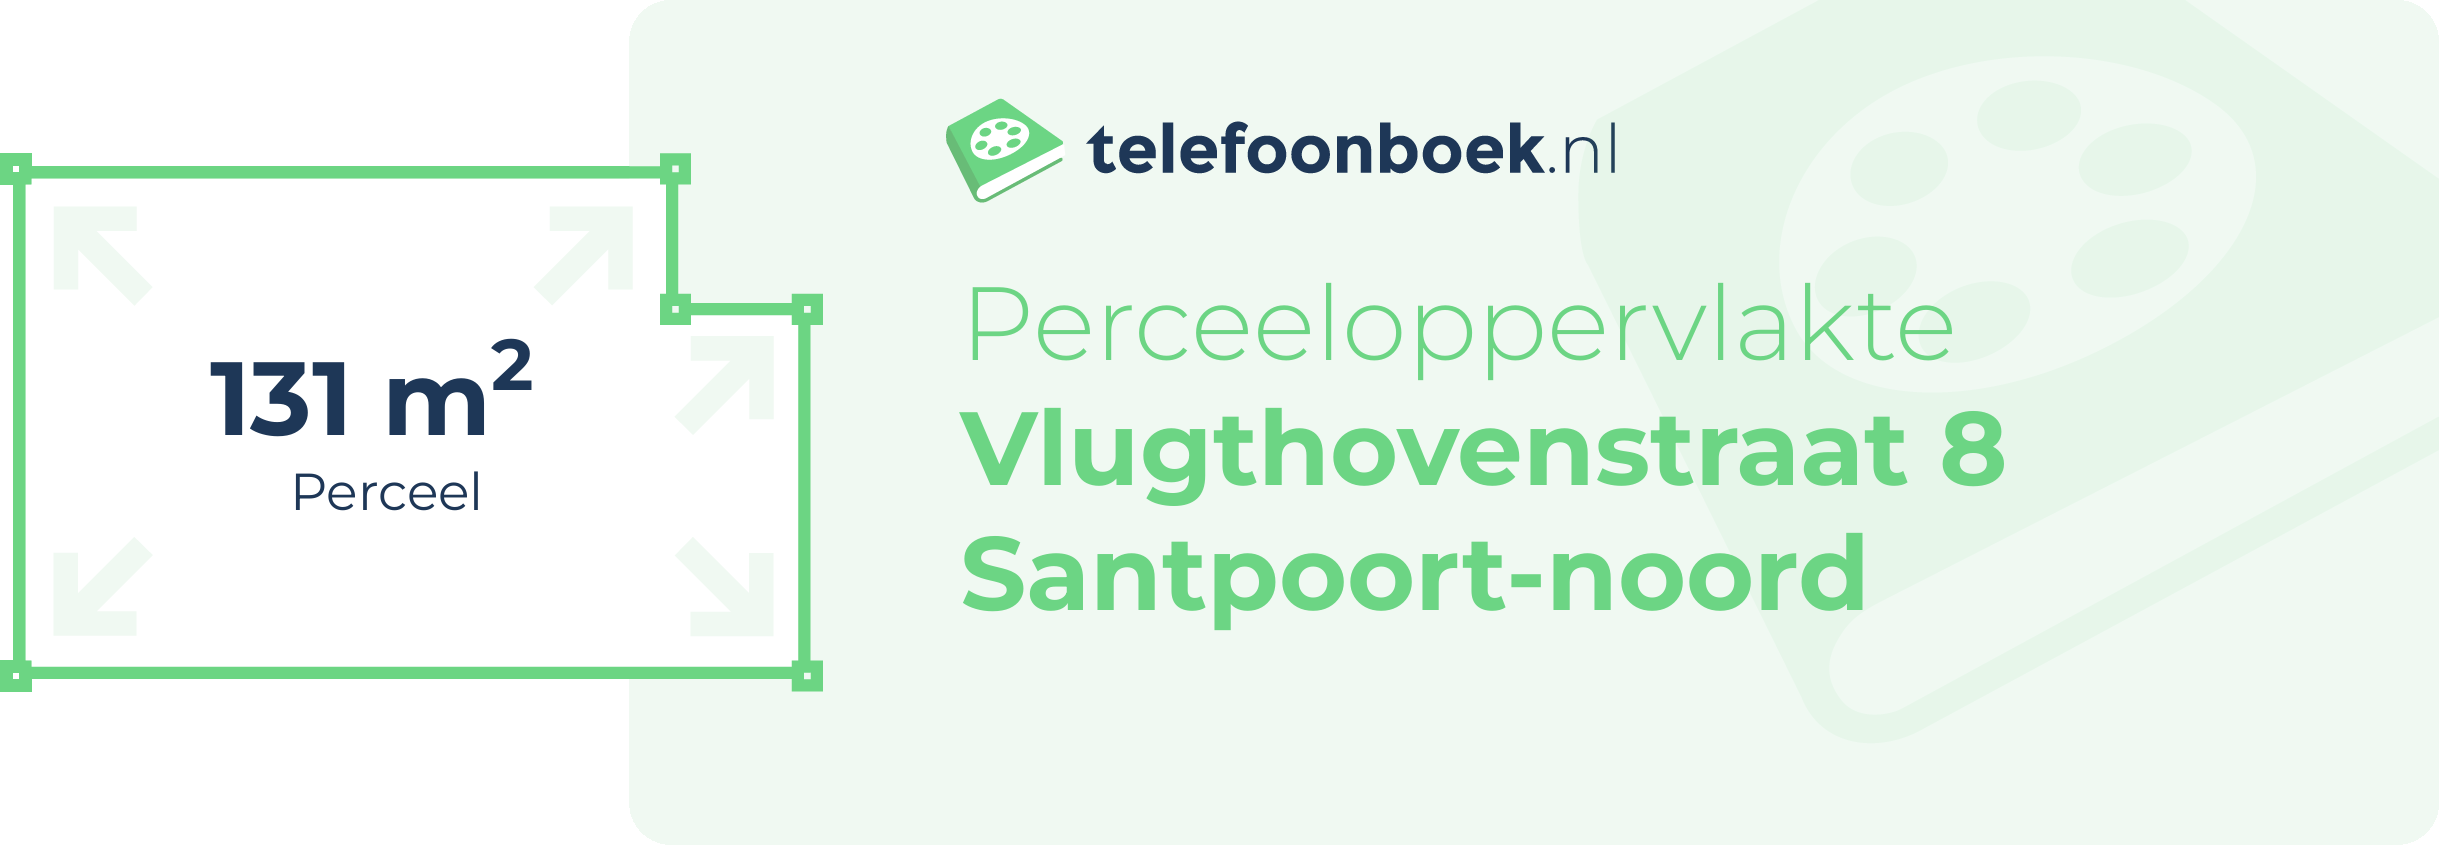 Perceeloppervlakte Vlugthovenstraat 8 Santpoort-Noord